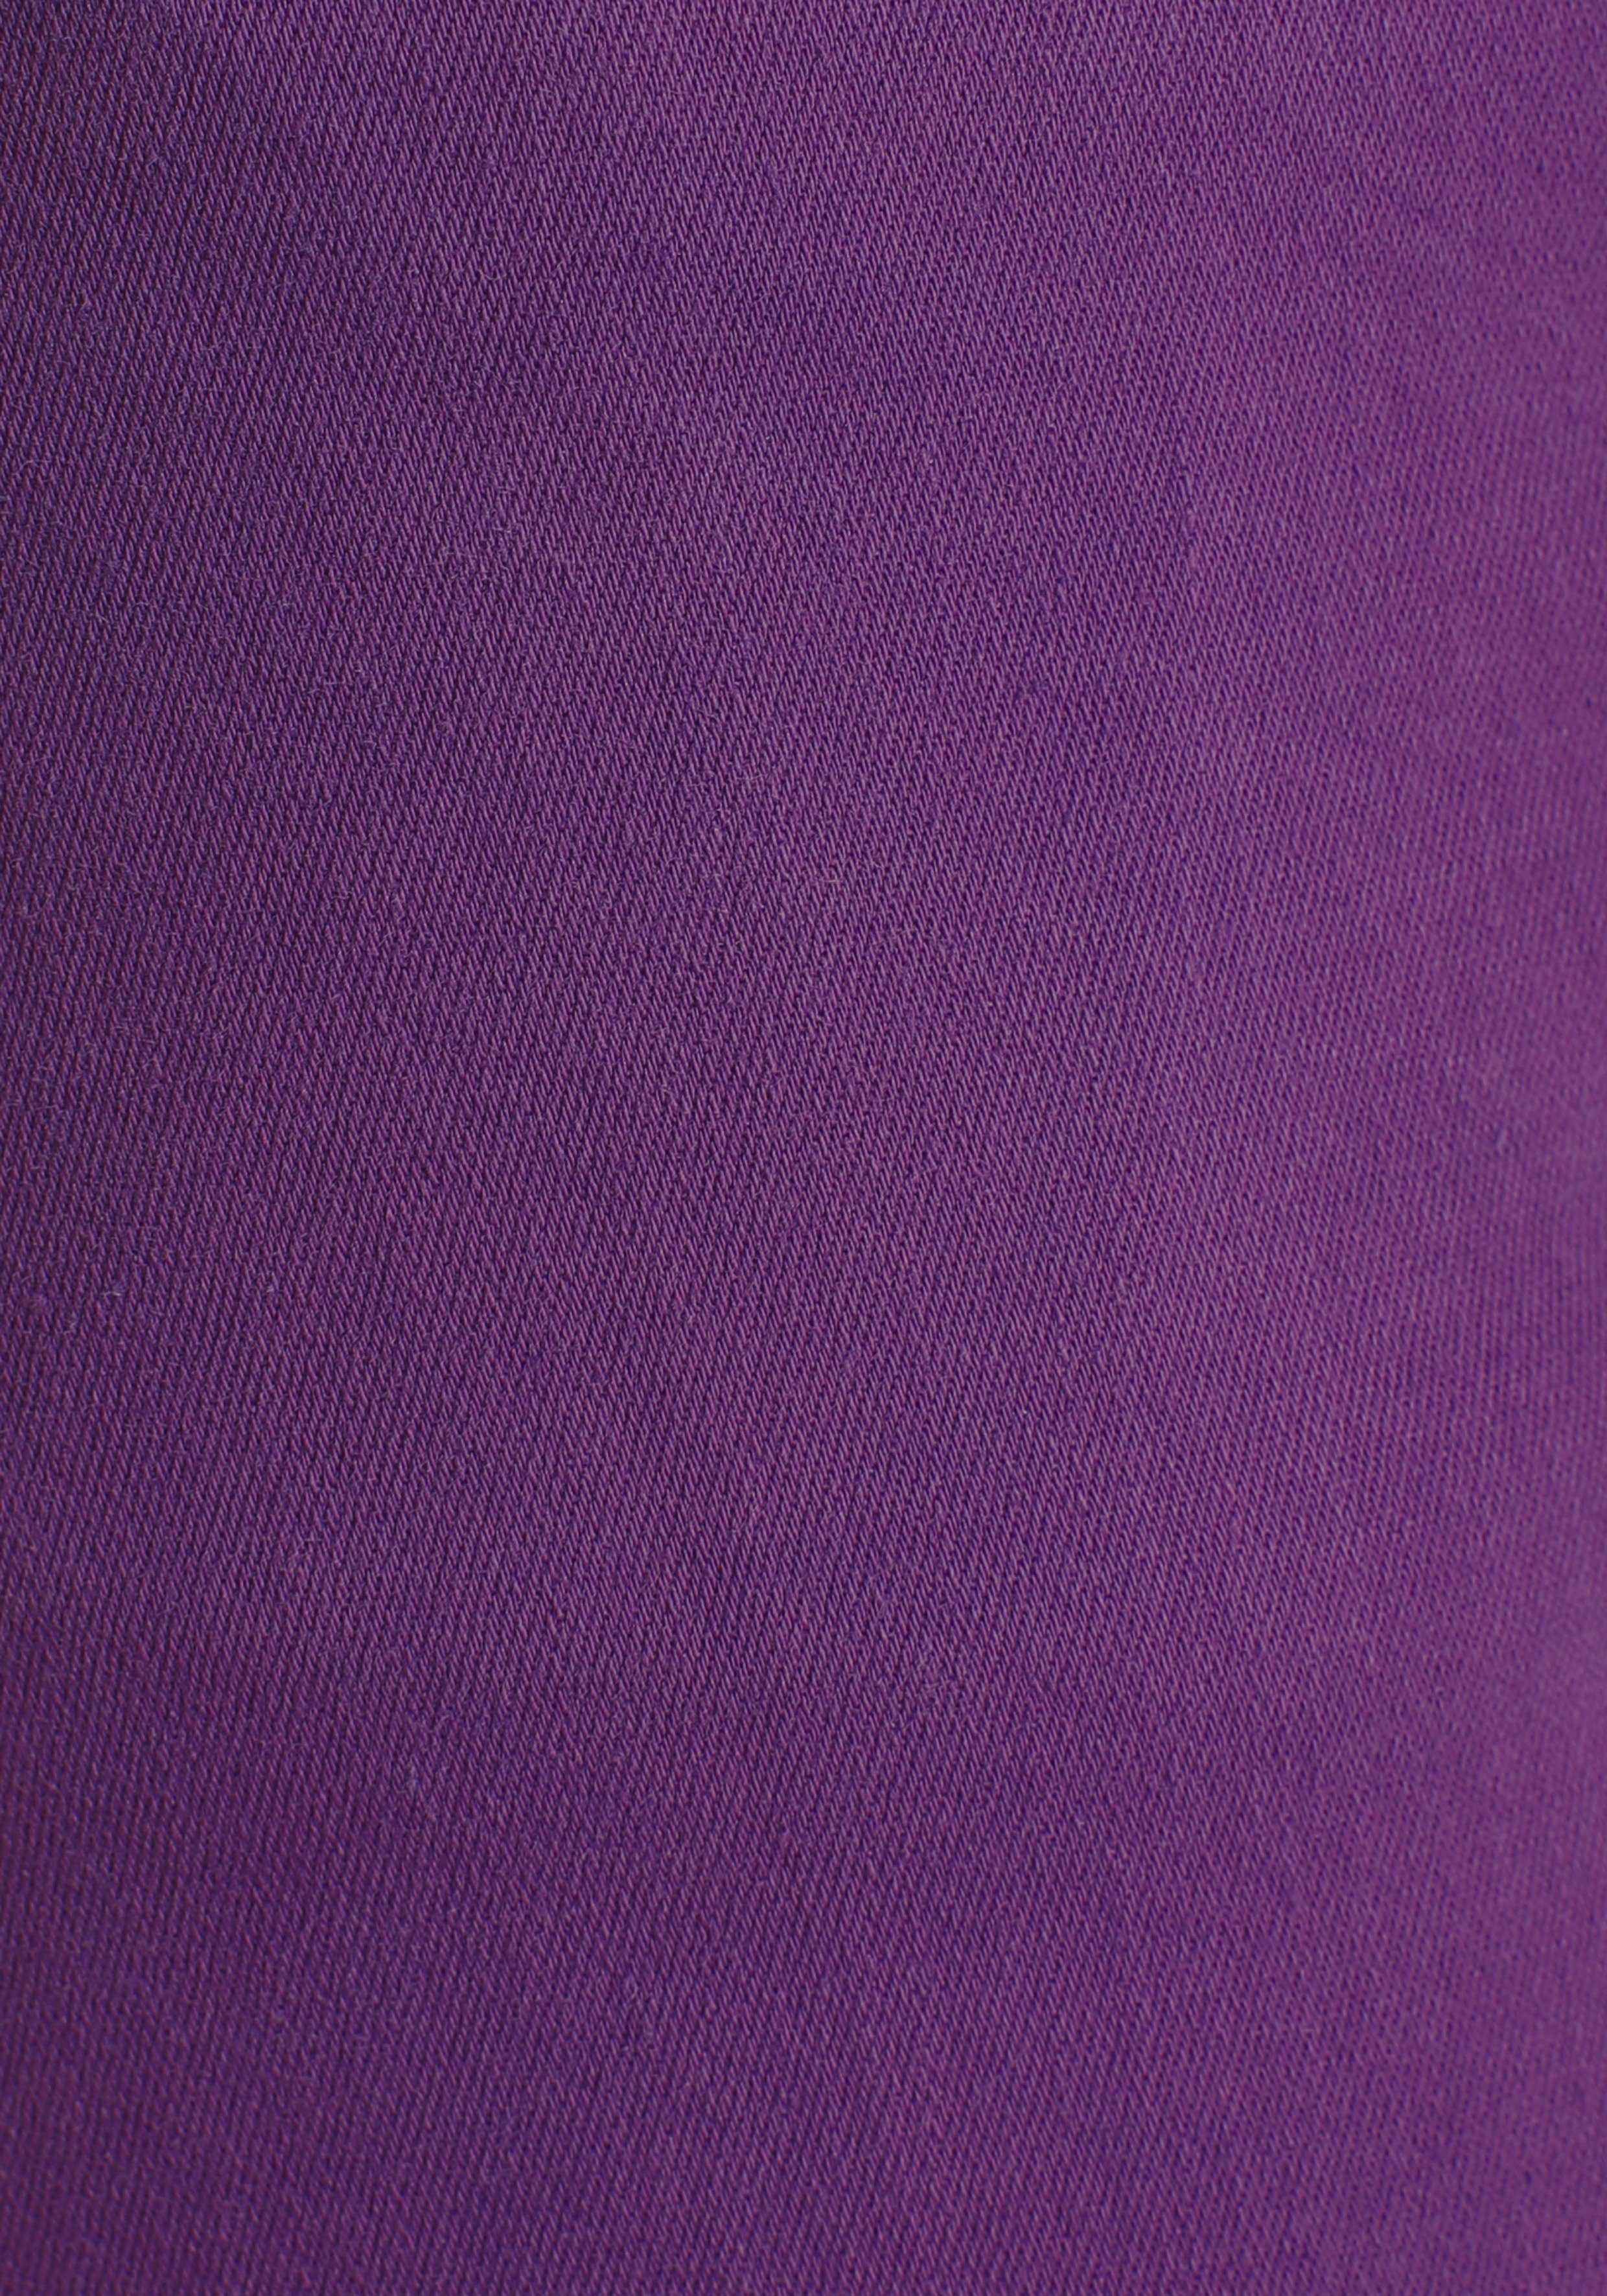 MAC Stretch-Jeans den purple mit Dream Stretch für Sitz perfekten magic